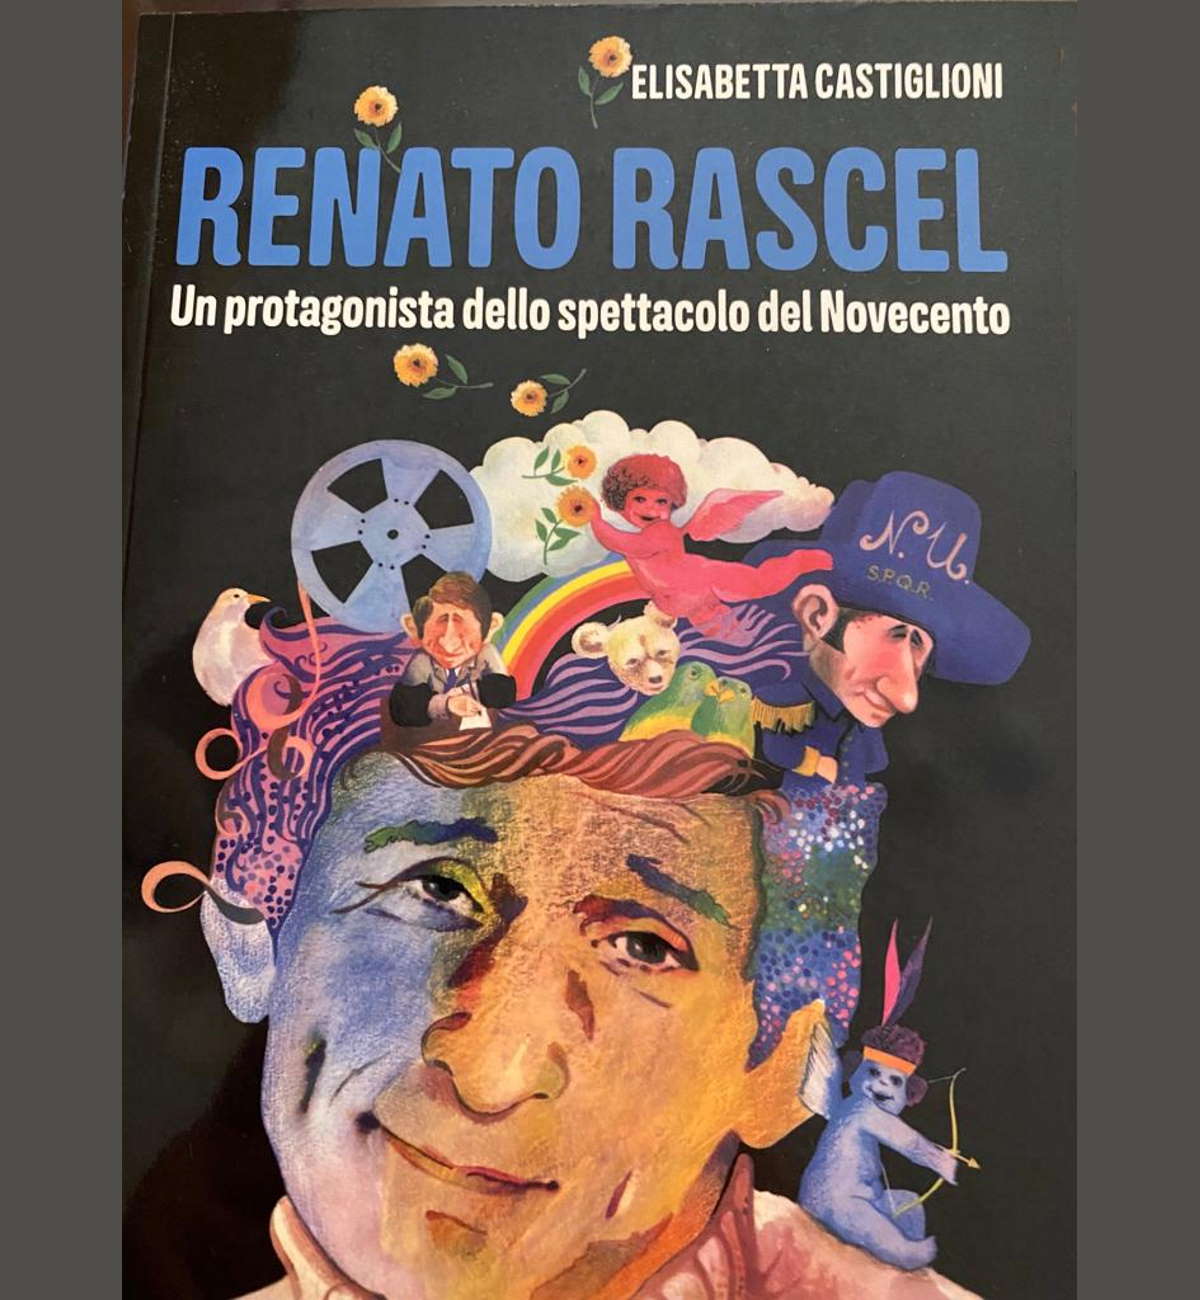 Un ottimo volume ripercorre la storia artistica di Renato Rascel